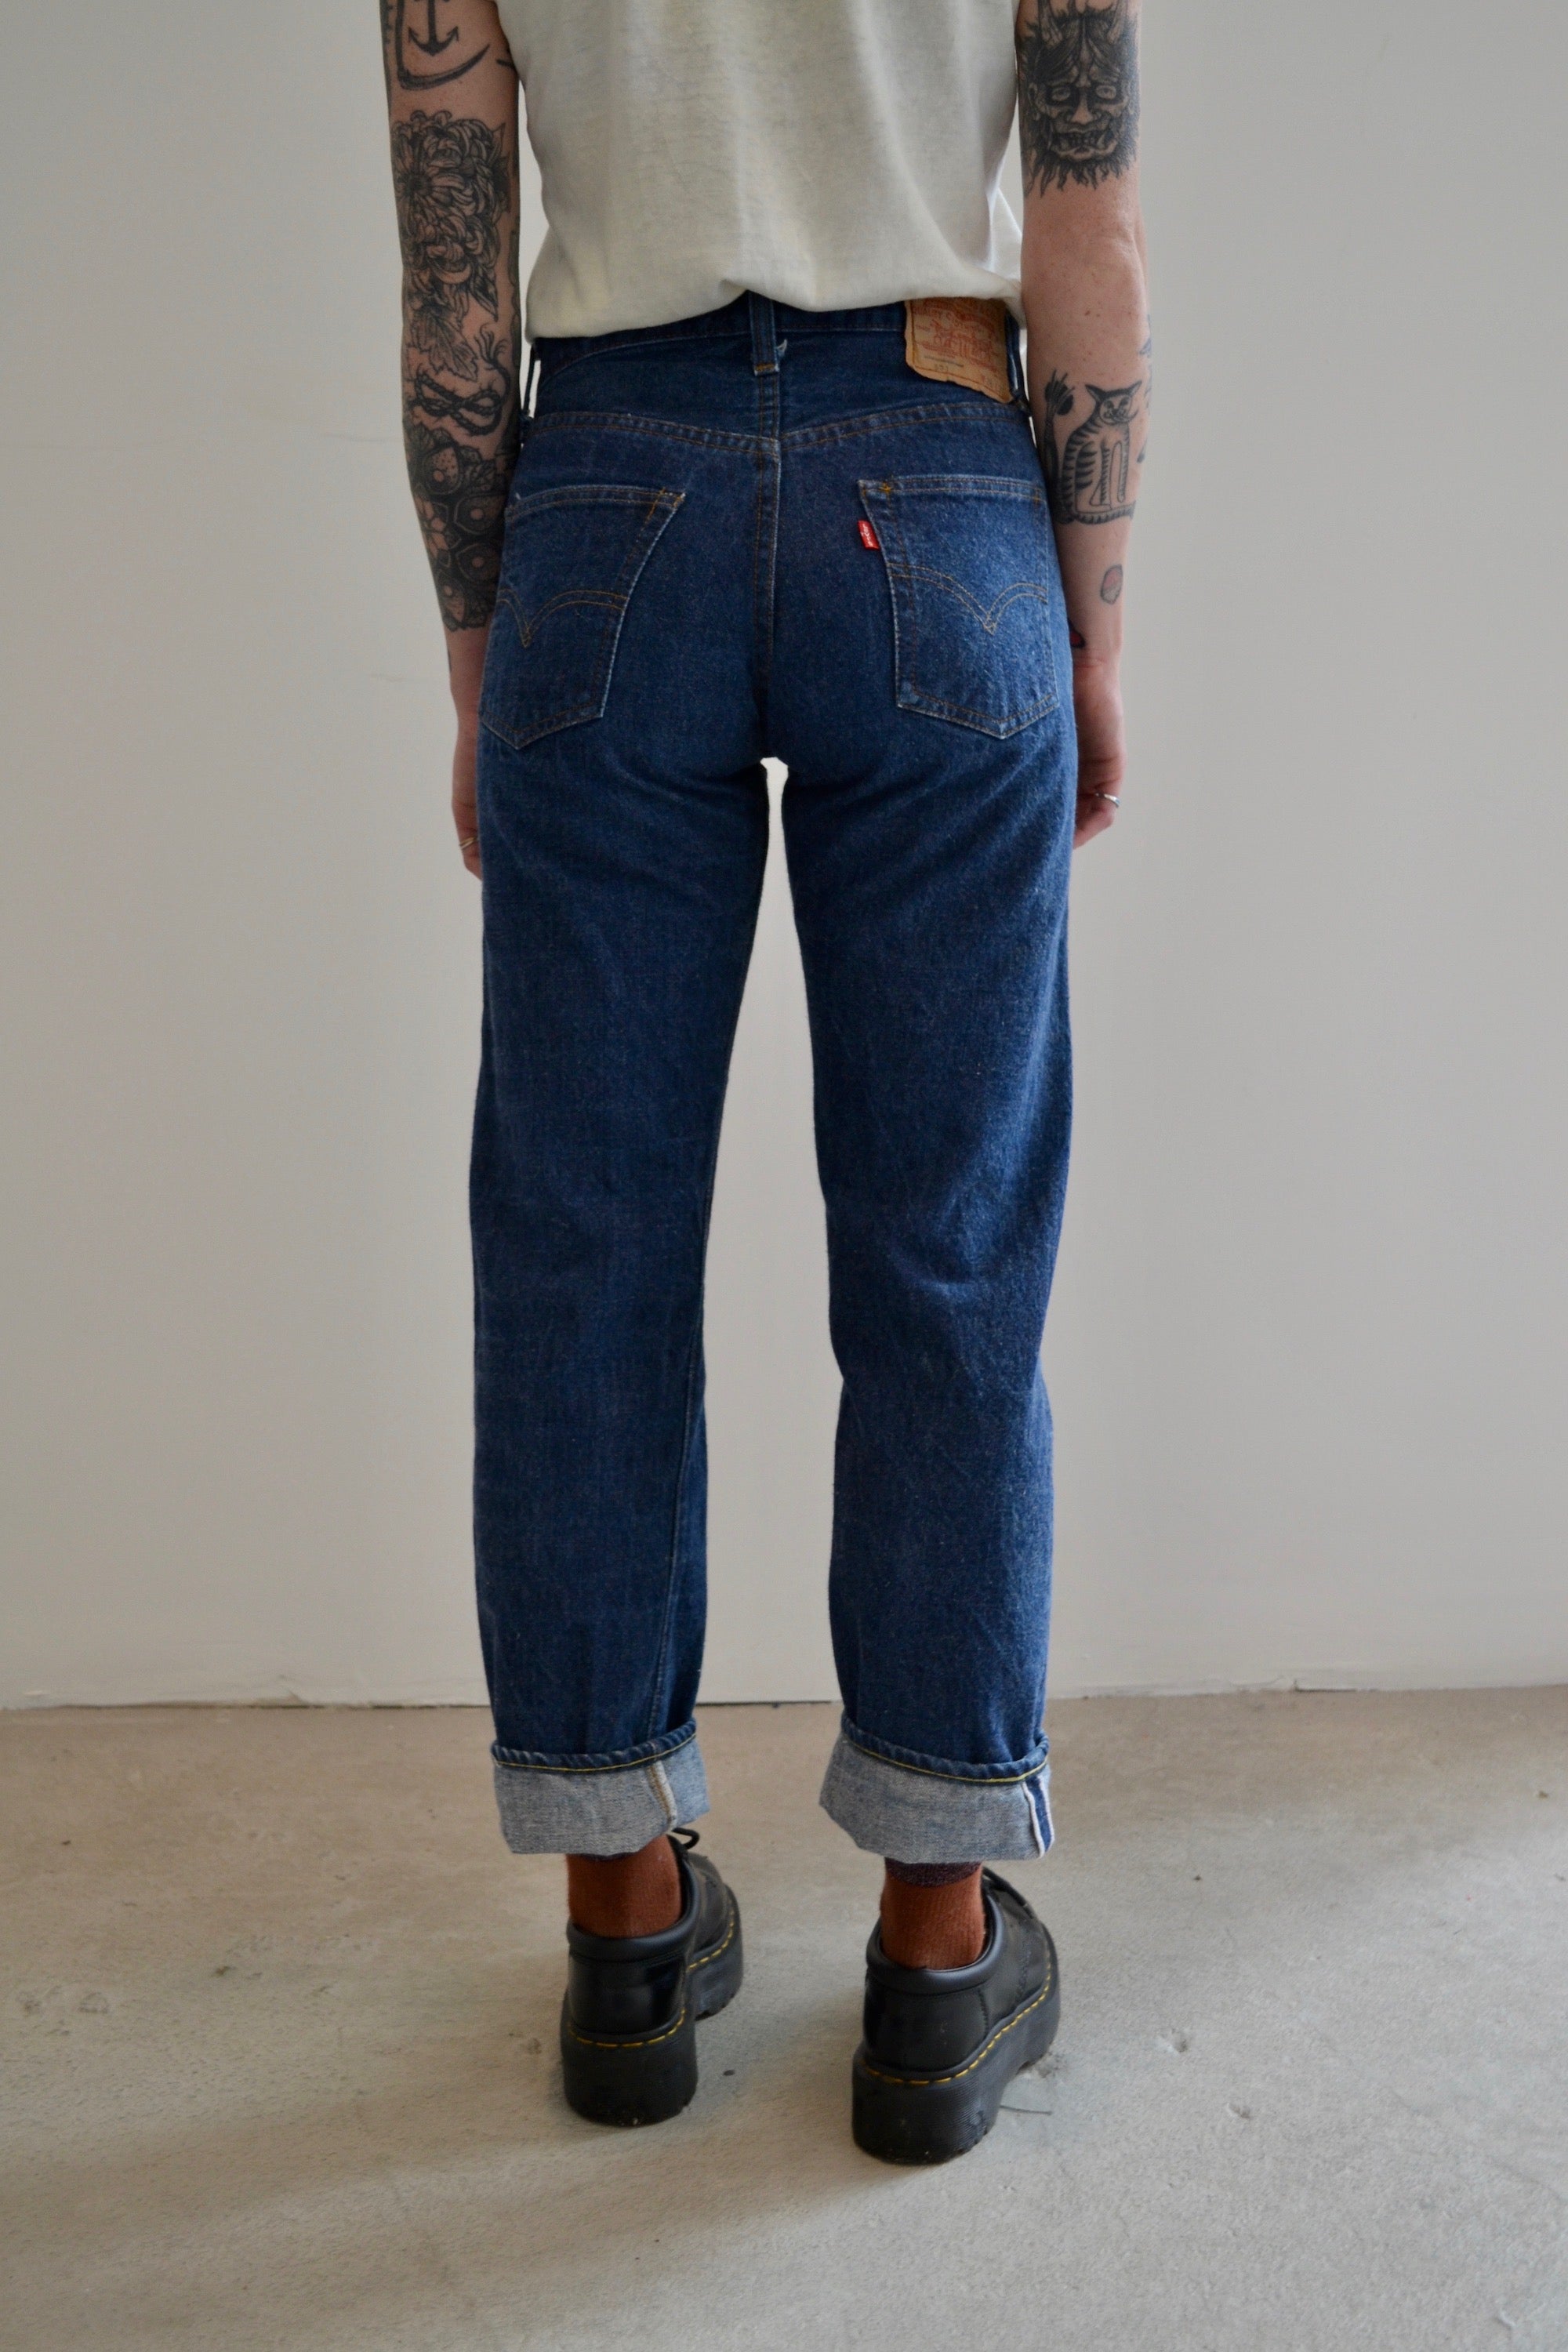 1980's Levis 501 Dark Wash Denim Selvedge Jeans